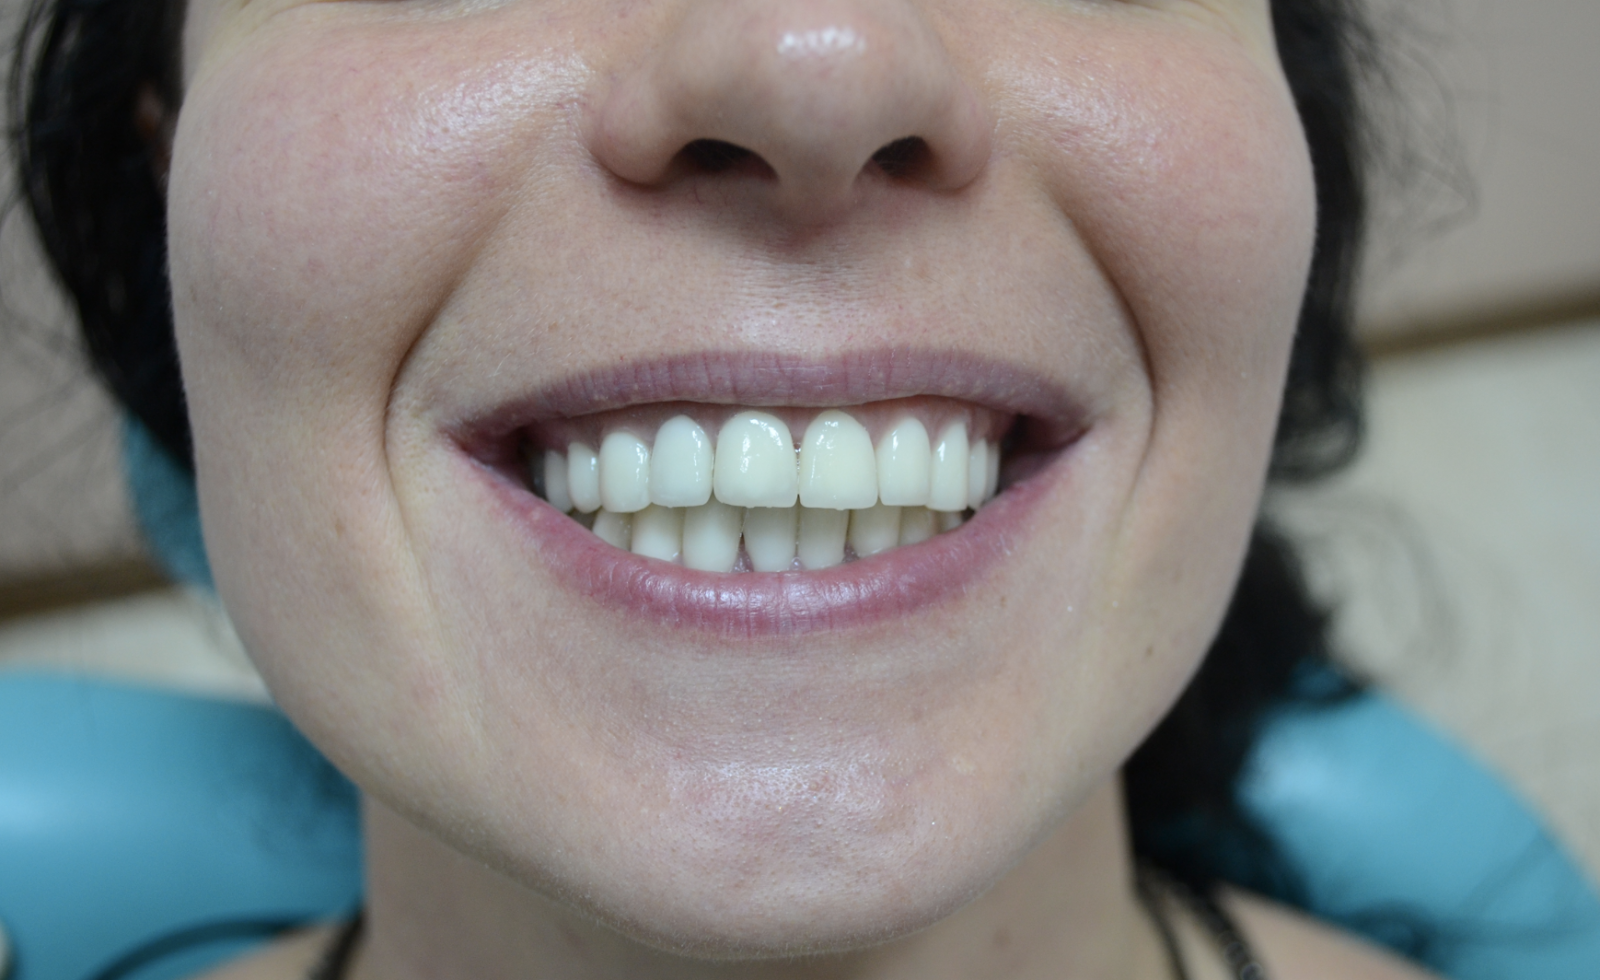 Фото: металлокерамические зубы выглядят неестественно, потому что на них нет блеска и прозрачности, как на эмали